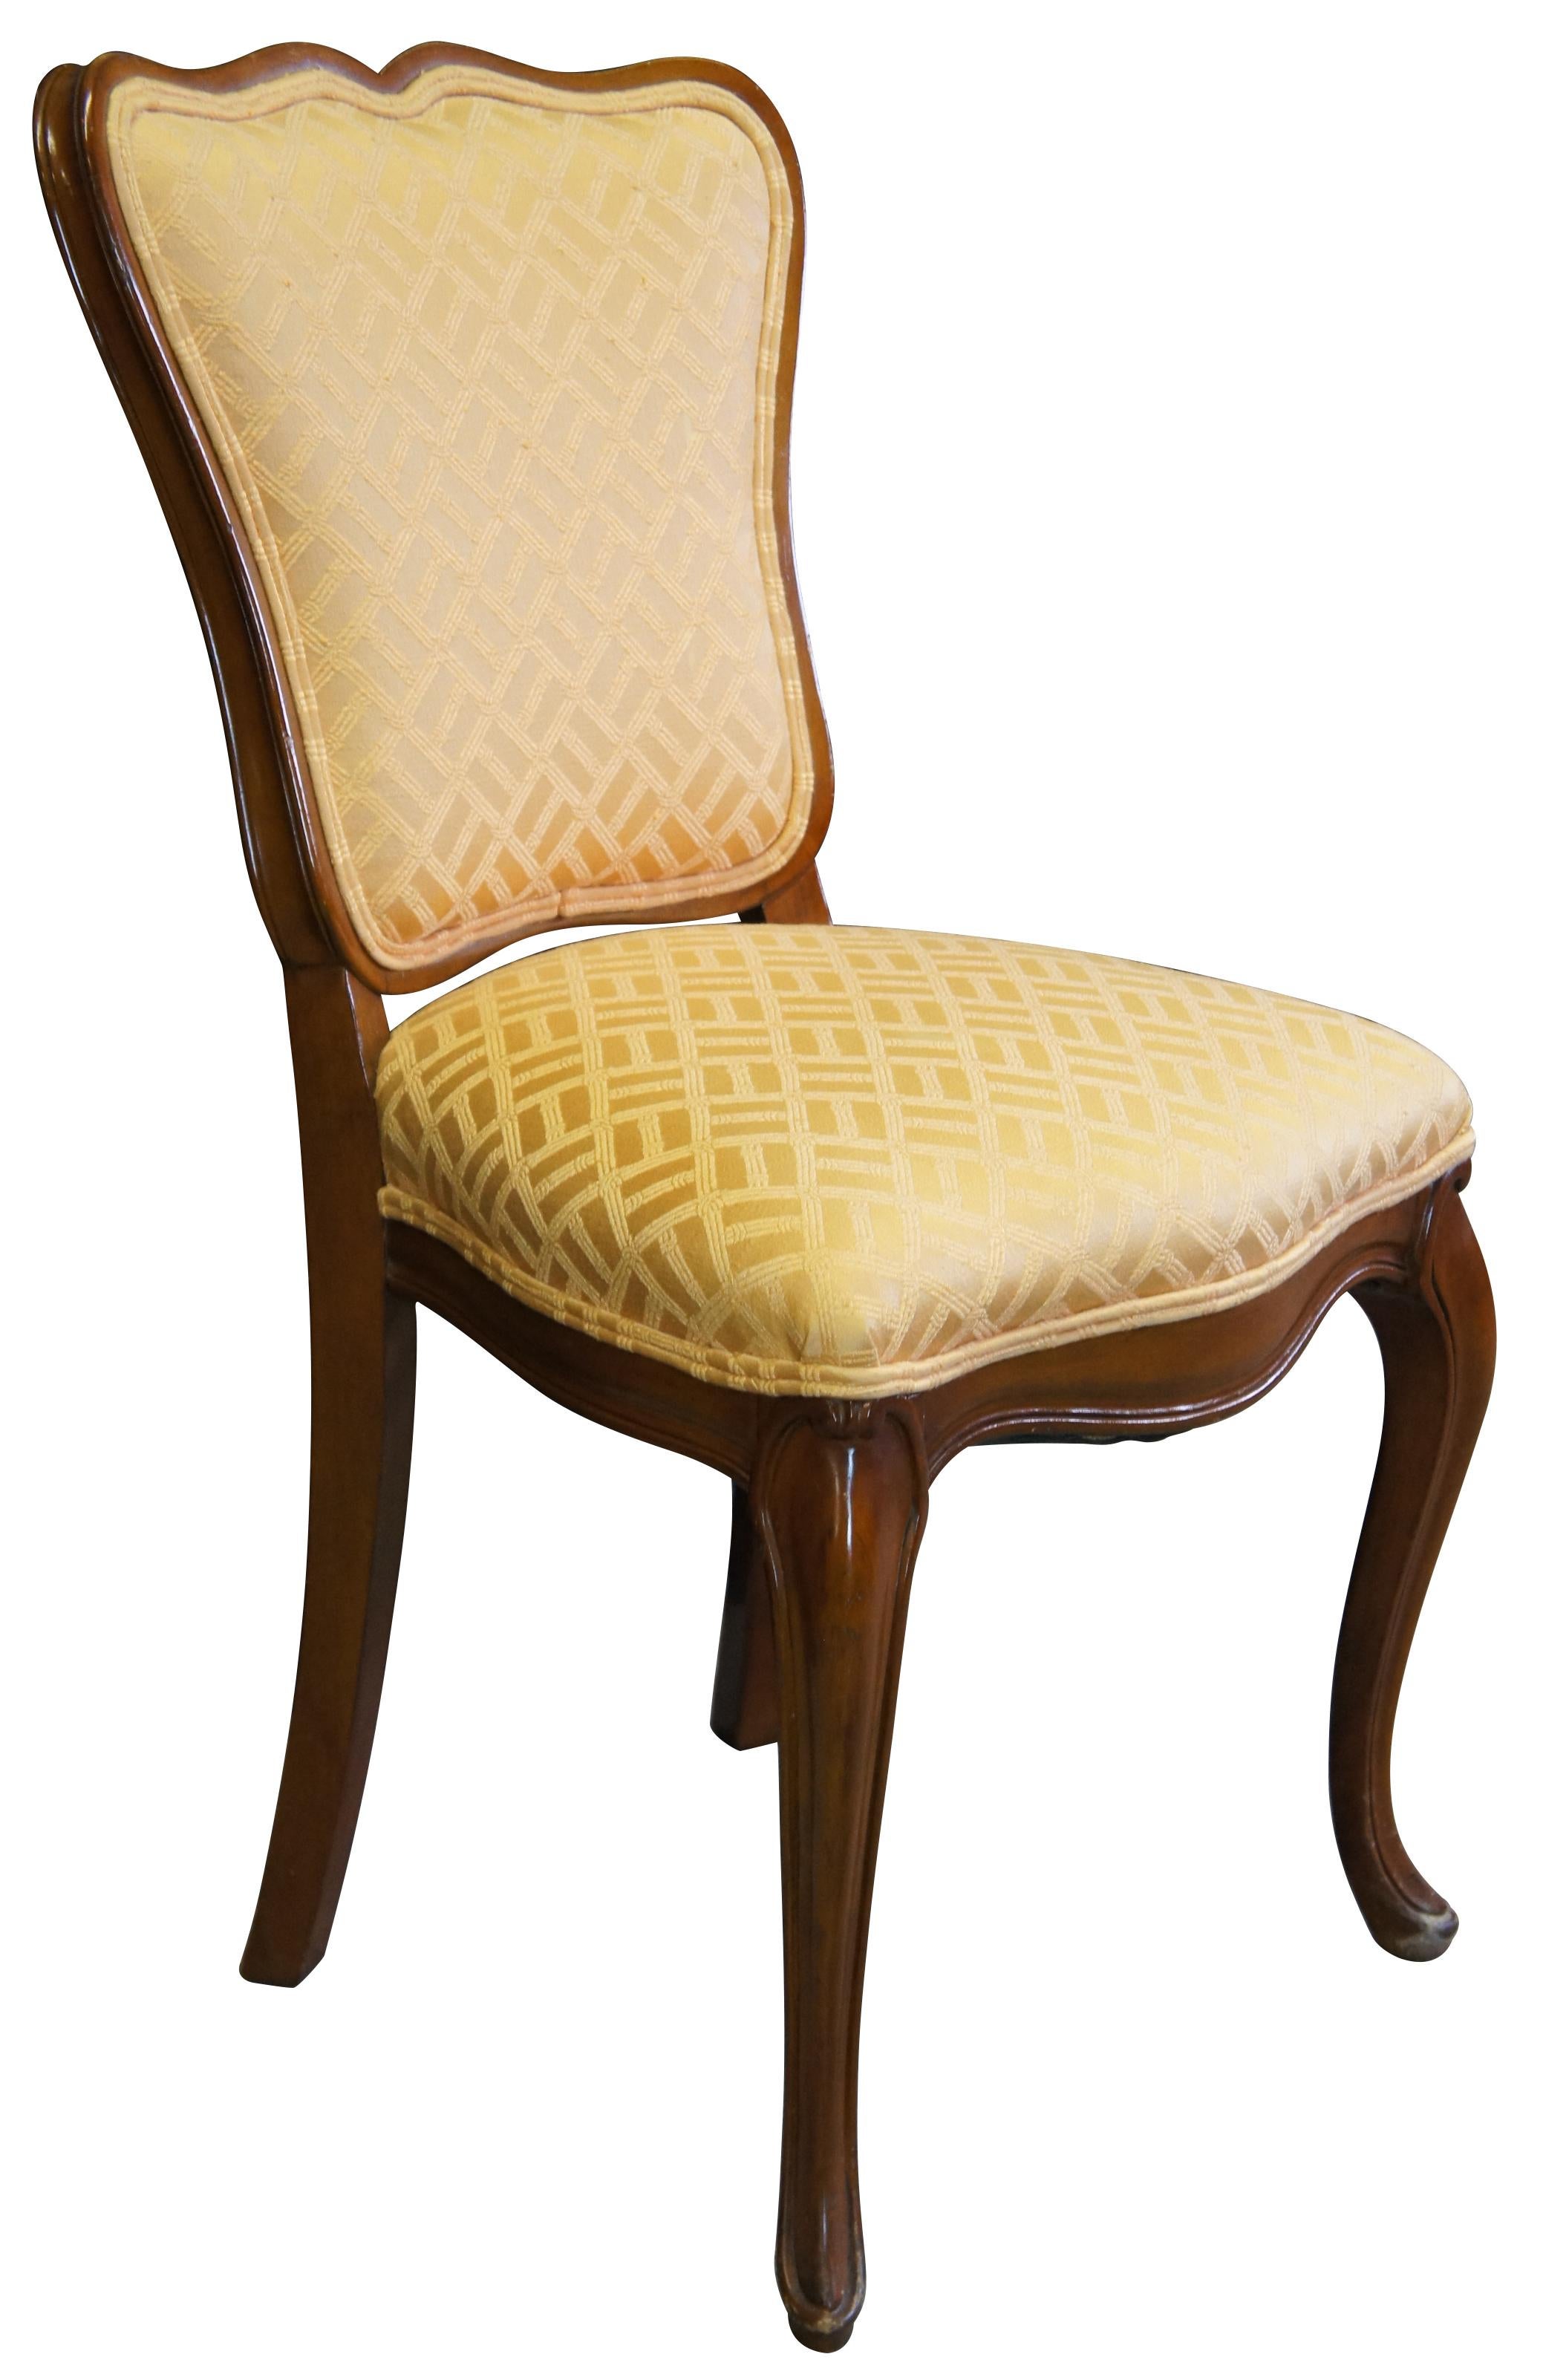 chaise d'appoint Globe furniture colony court des années 1950. D'inspiration française avec une finition en noyer. Il est doté d'un rail de crête serpentin, d'un tissu à motif de bambou doré et de pieds cabriole. Globe Furniture a ouvert en 1906 et